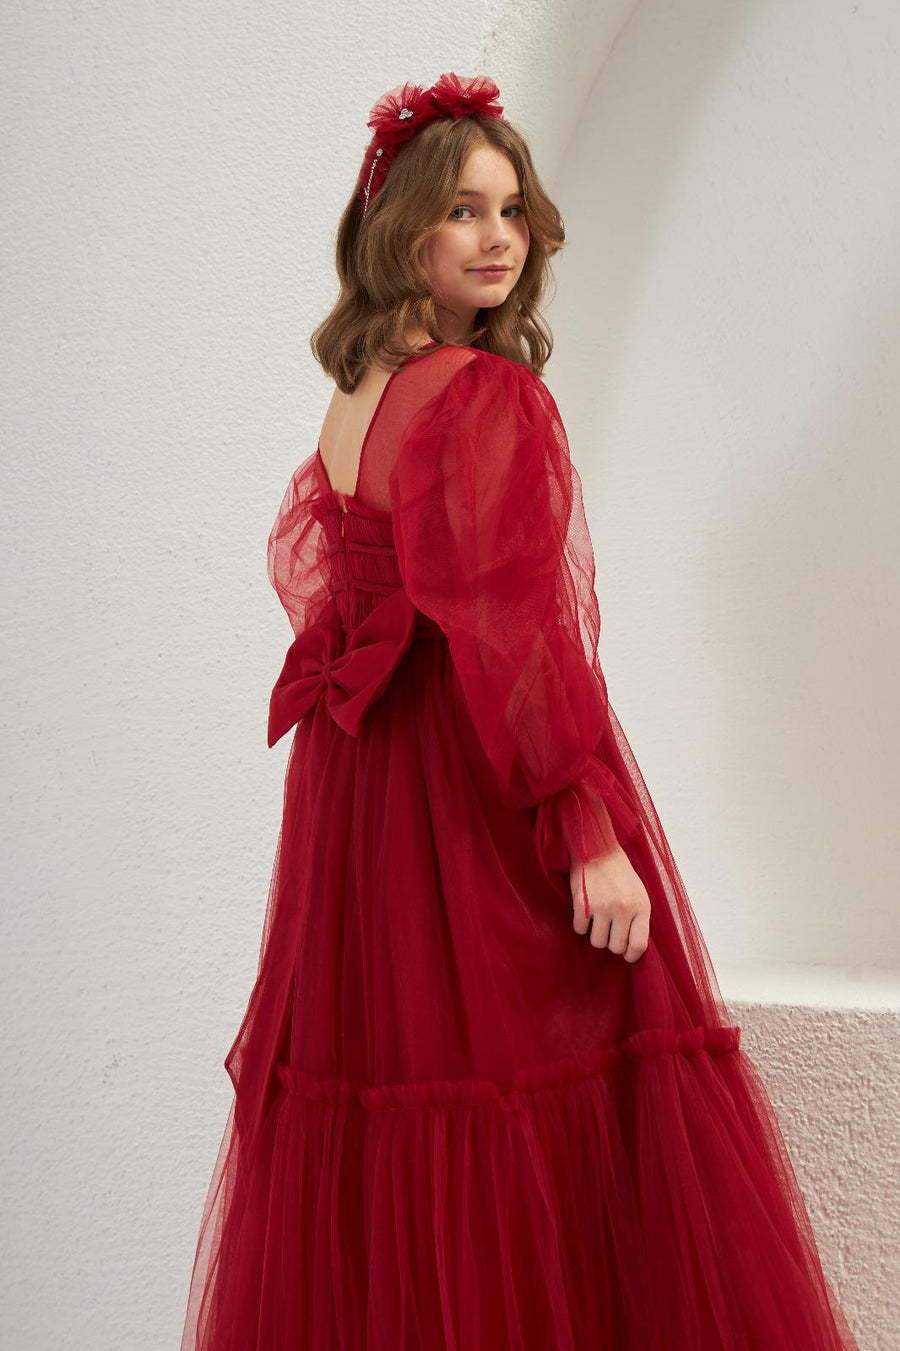 Pretty Lovely Elegant Red Dress 2307